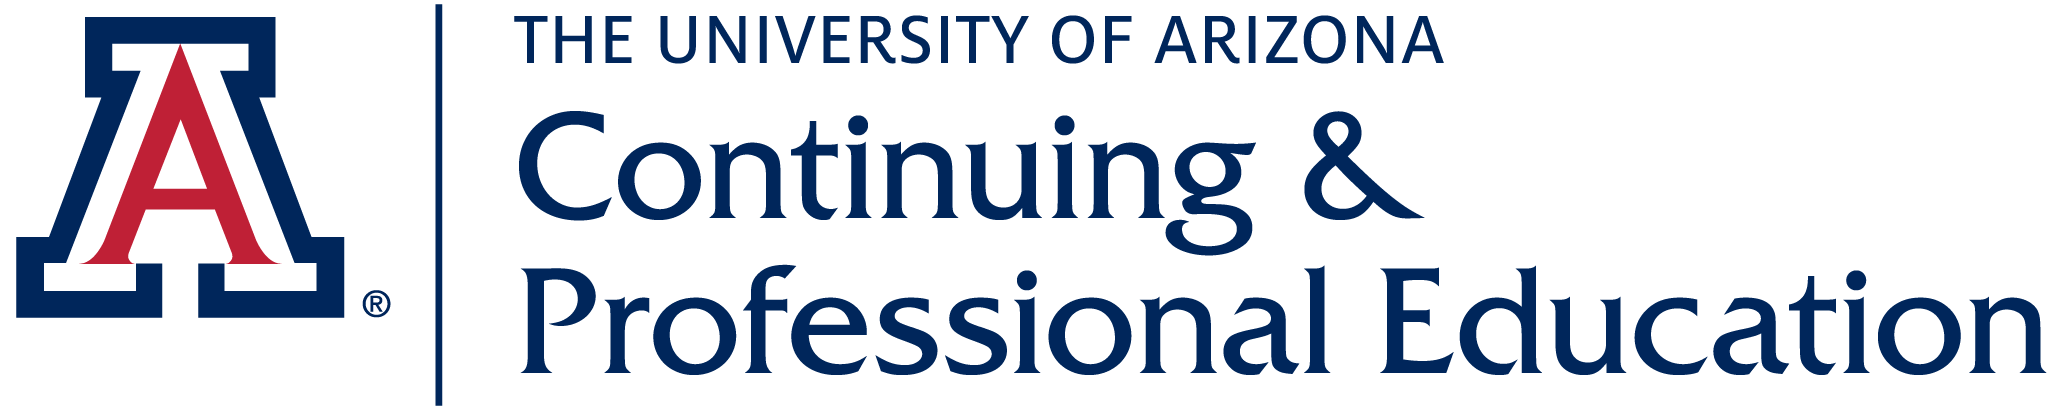 UA Continuing & Professional Education